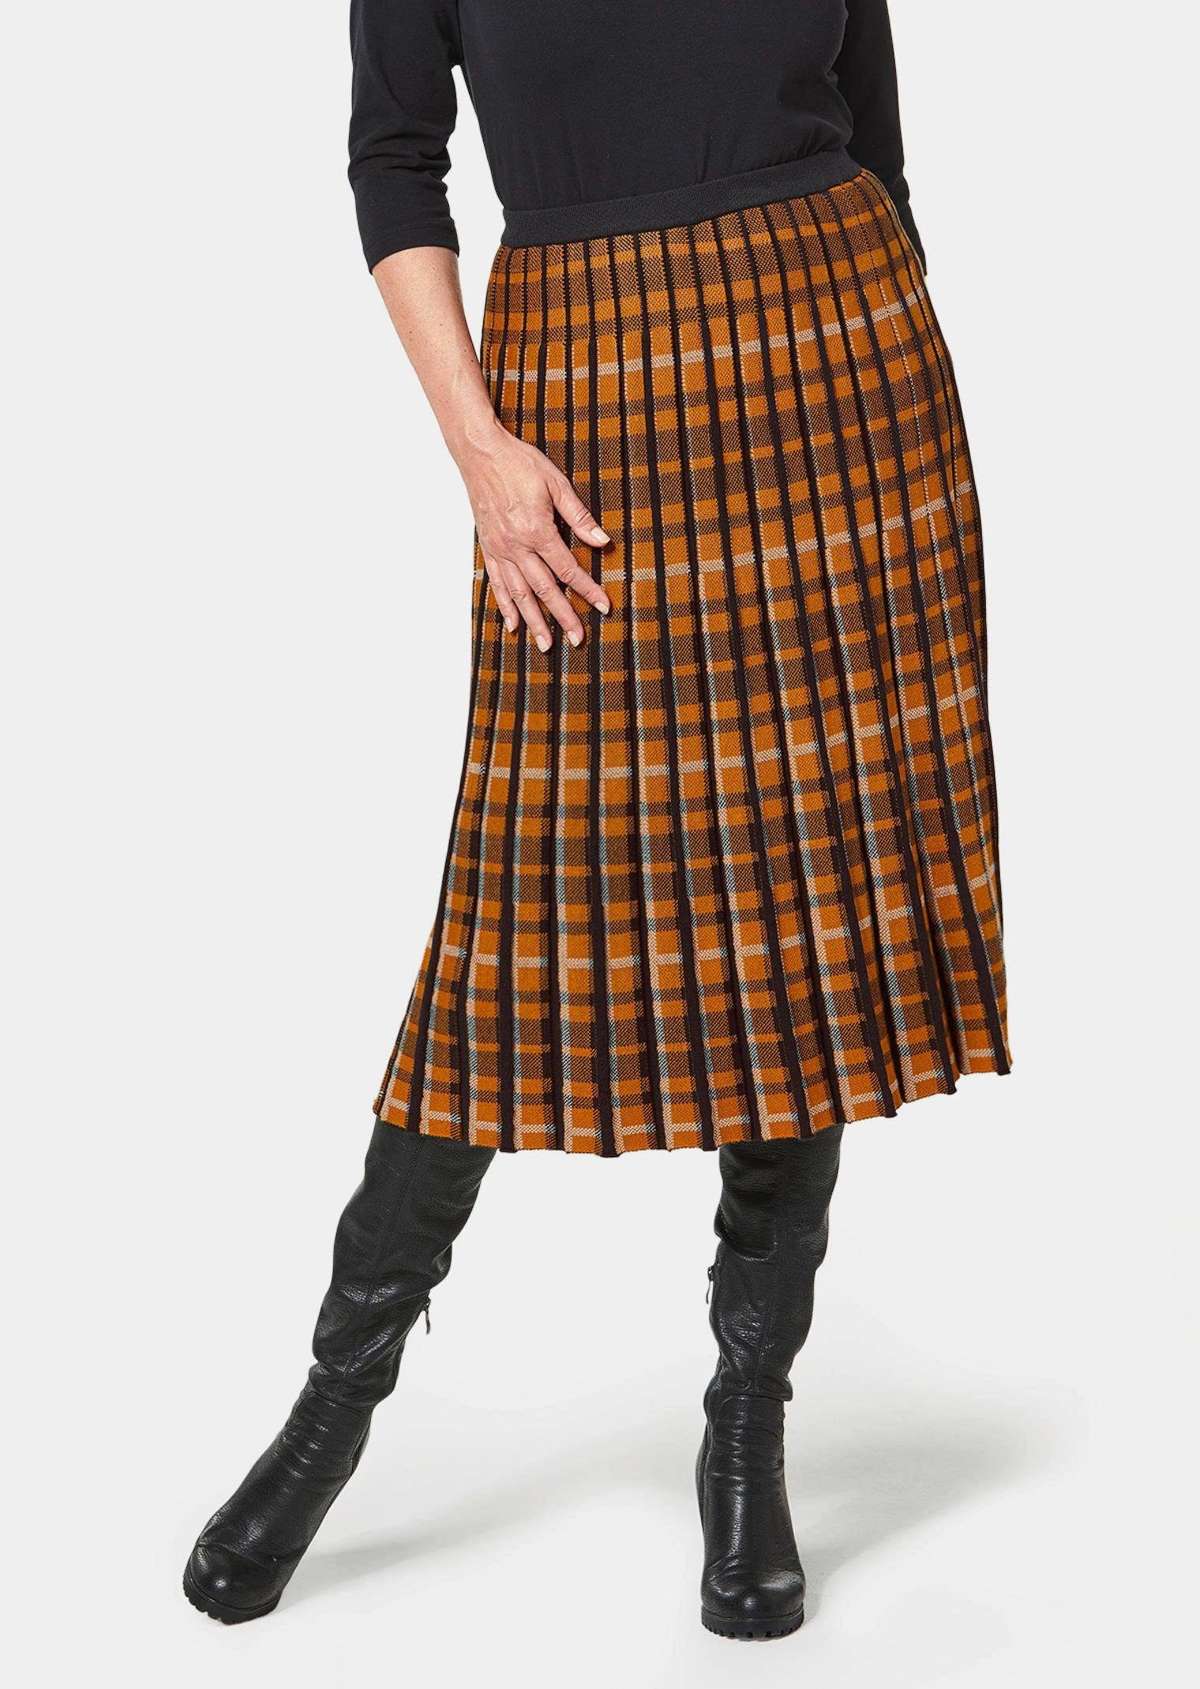 Юбка-слип Трикотажная юбка с жаккардовым узором и плиссировкой.